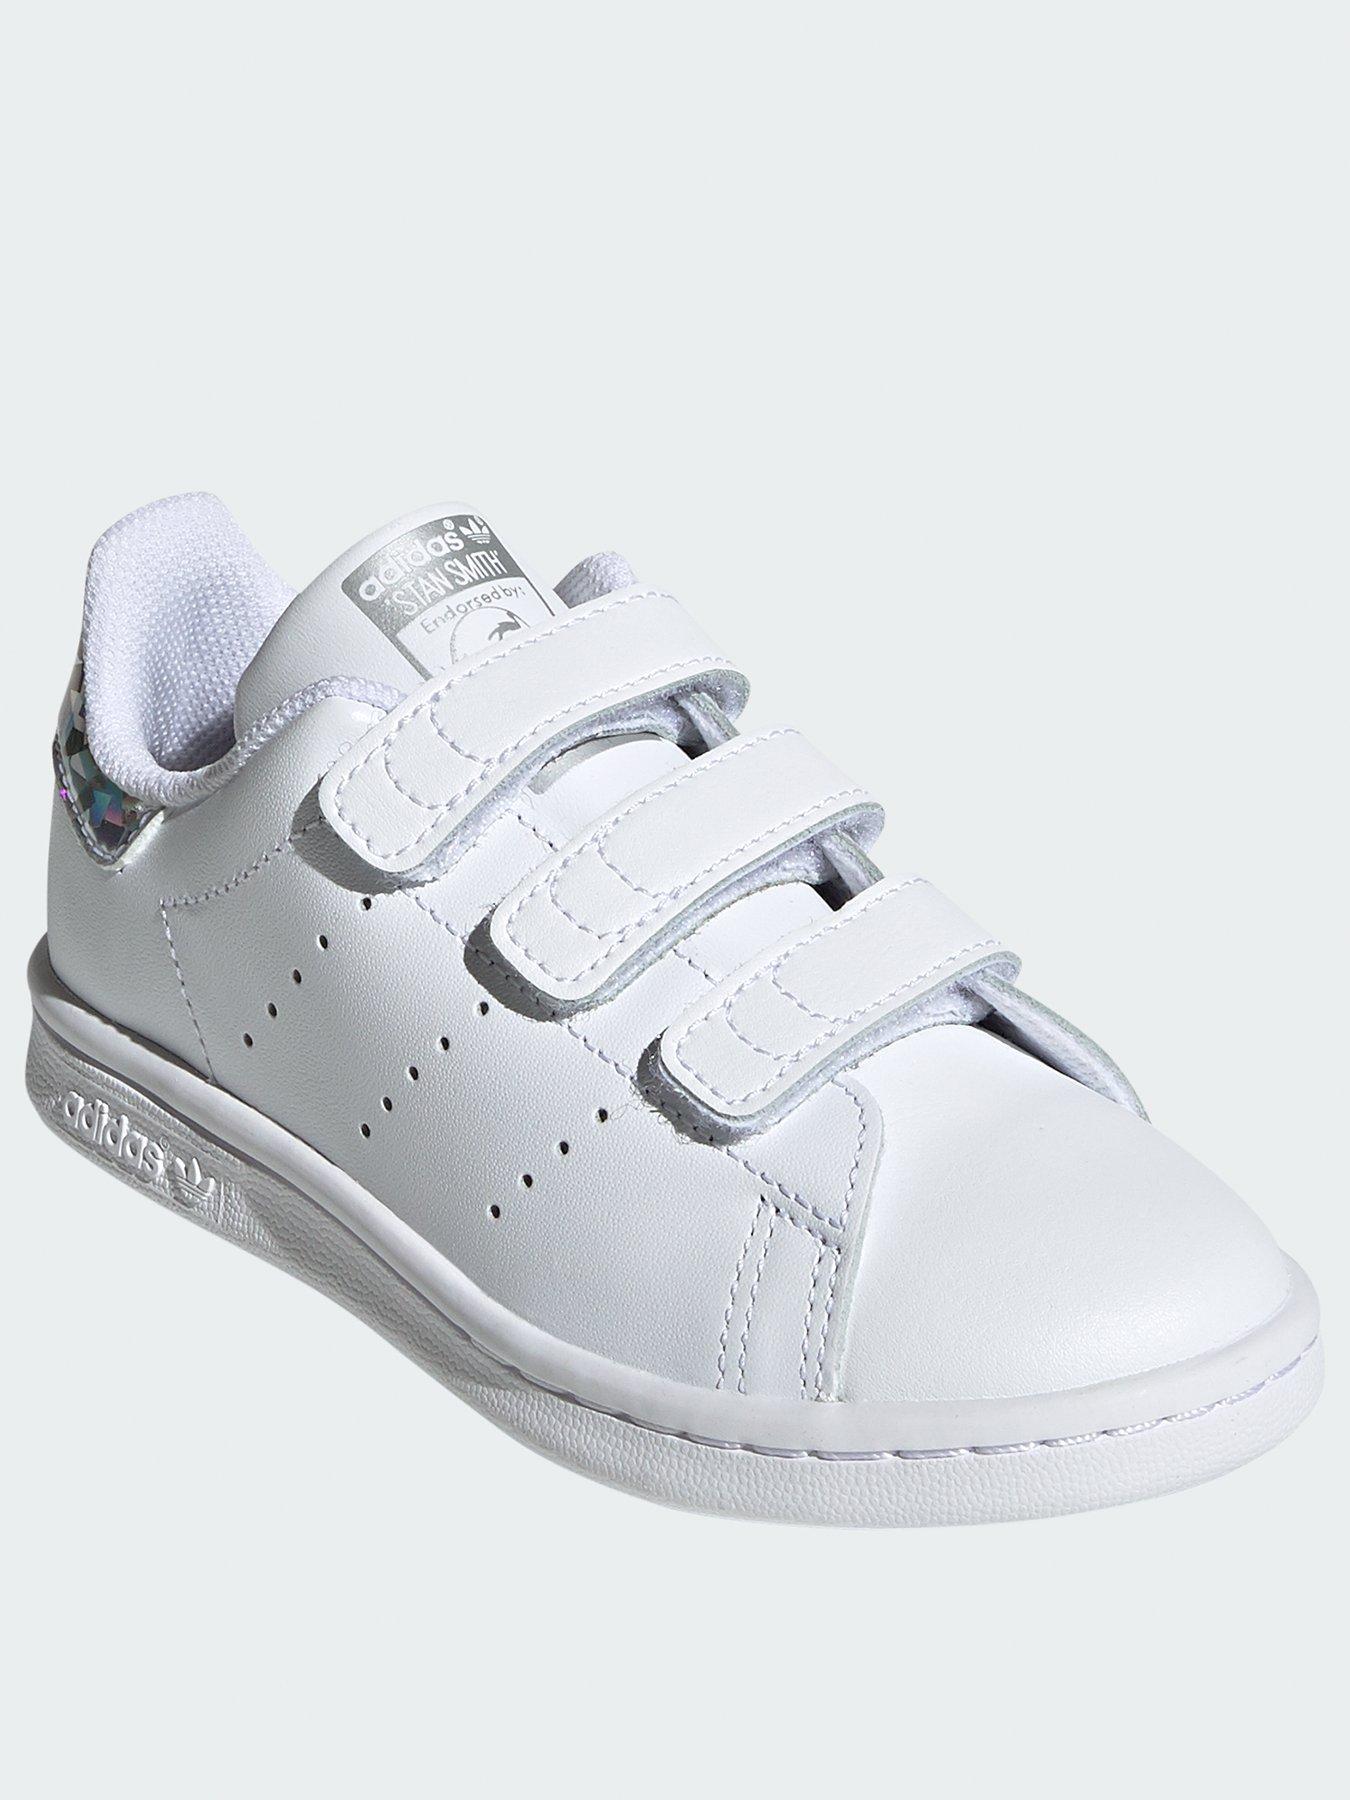 adidas white trainers girls